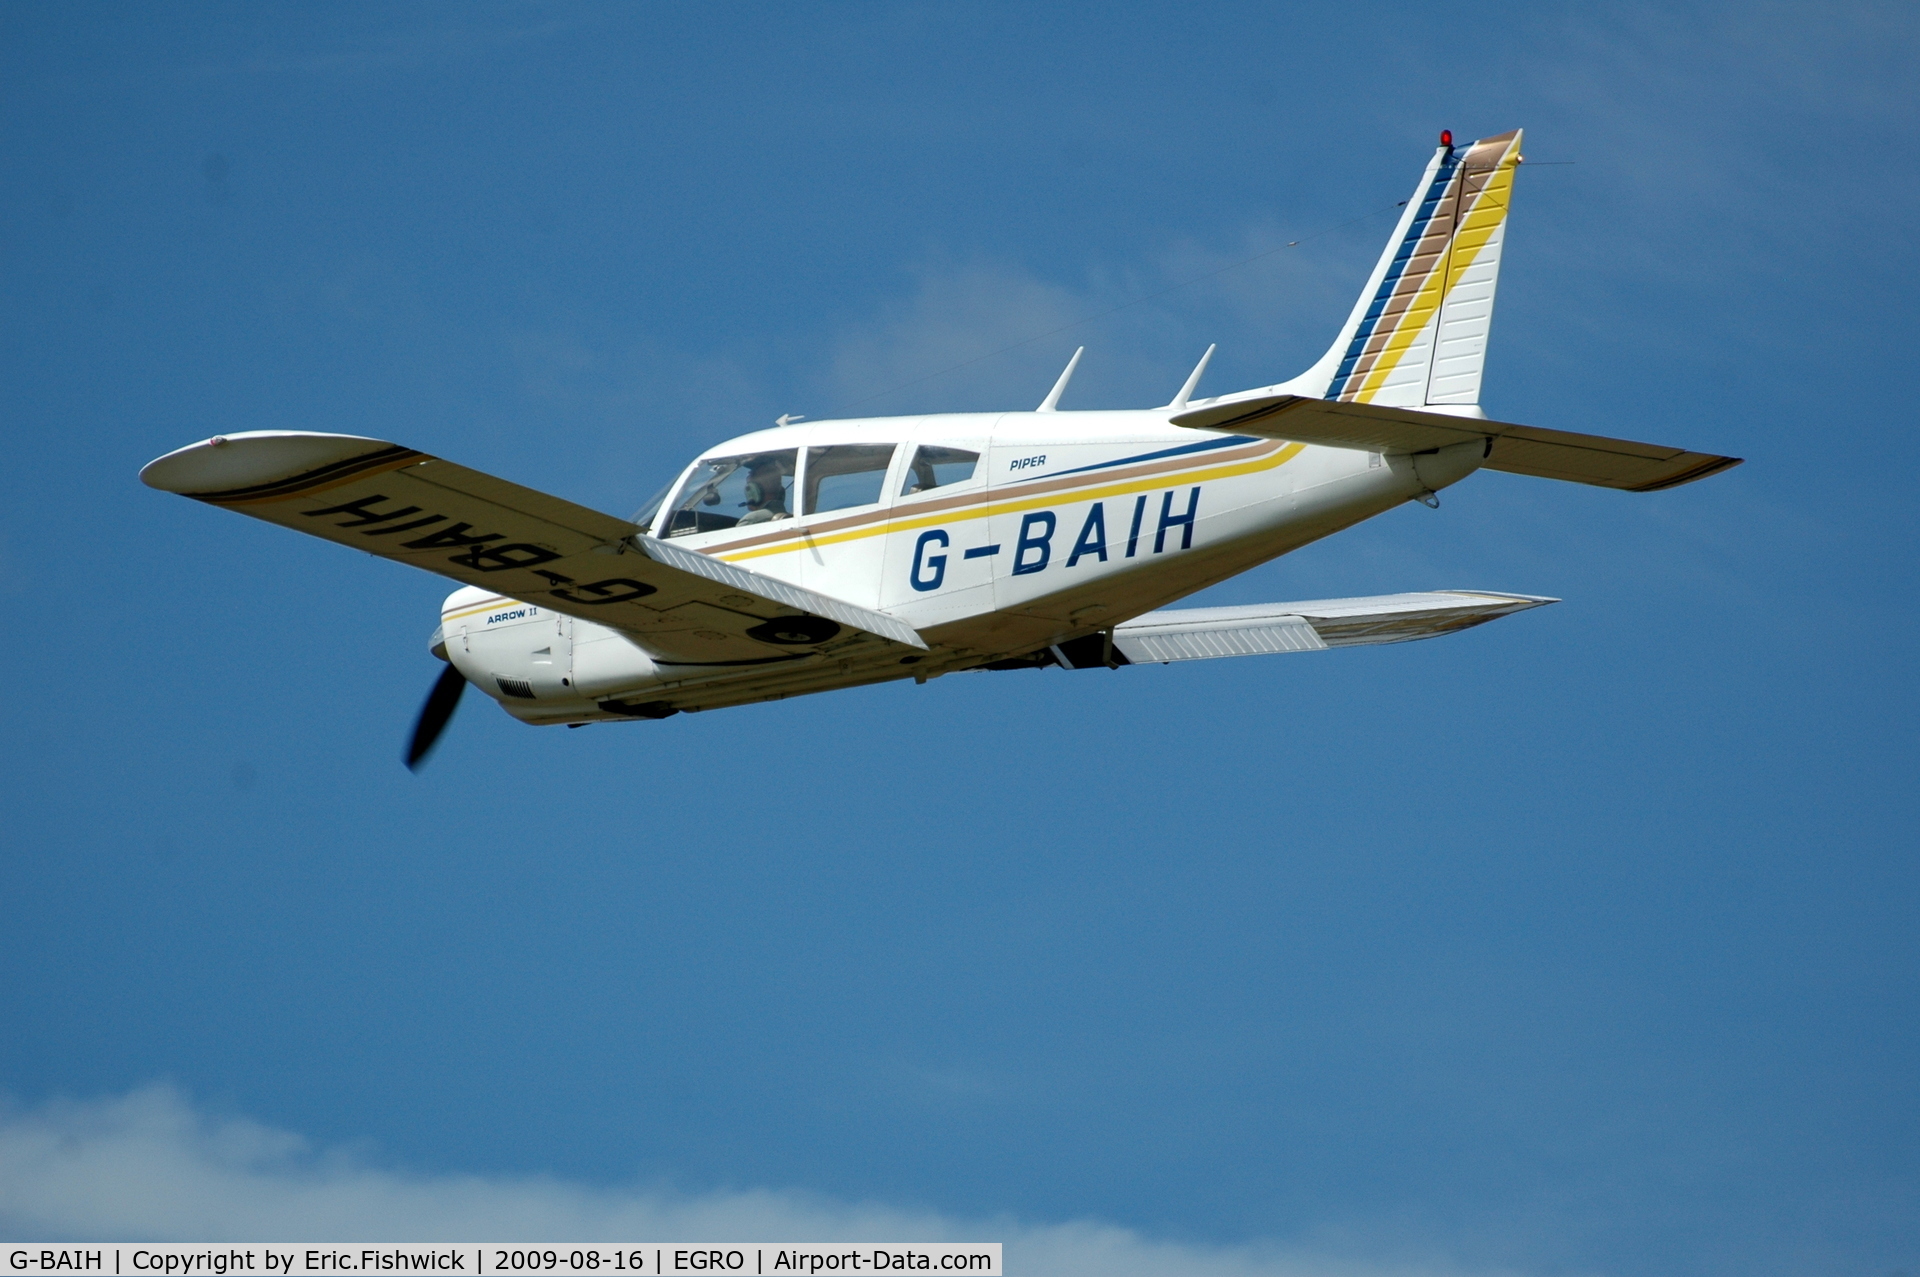 G-BAIH, 1972 Piper PA-28R-200-2 Cherokee Arrow II C/N 28R-7335011, G-BAIH at Heart Air Display, Rougham Airfield Aug 09